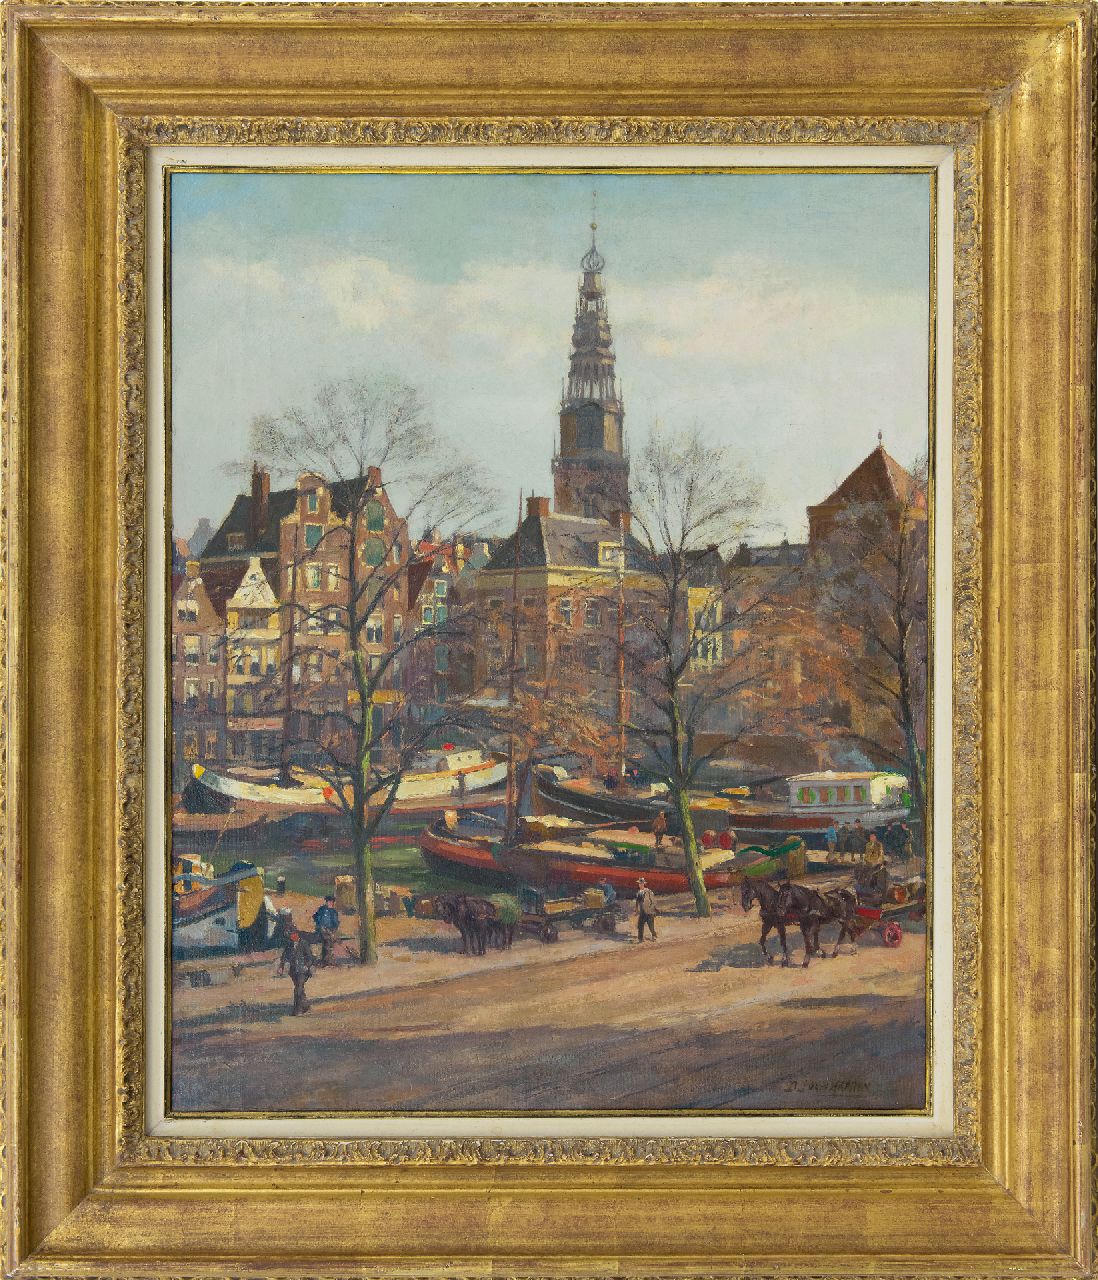 Haaren D.J. van | 'Dirk' Johannes van Haaren | Schilderijen te koop aangeboden | Stadsgezicht van Amsterdam met de Oudekerkstoren, olieverf op doek 58,1 x 47,0 cm, gesigneerd rechtsonder